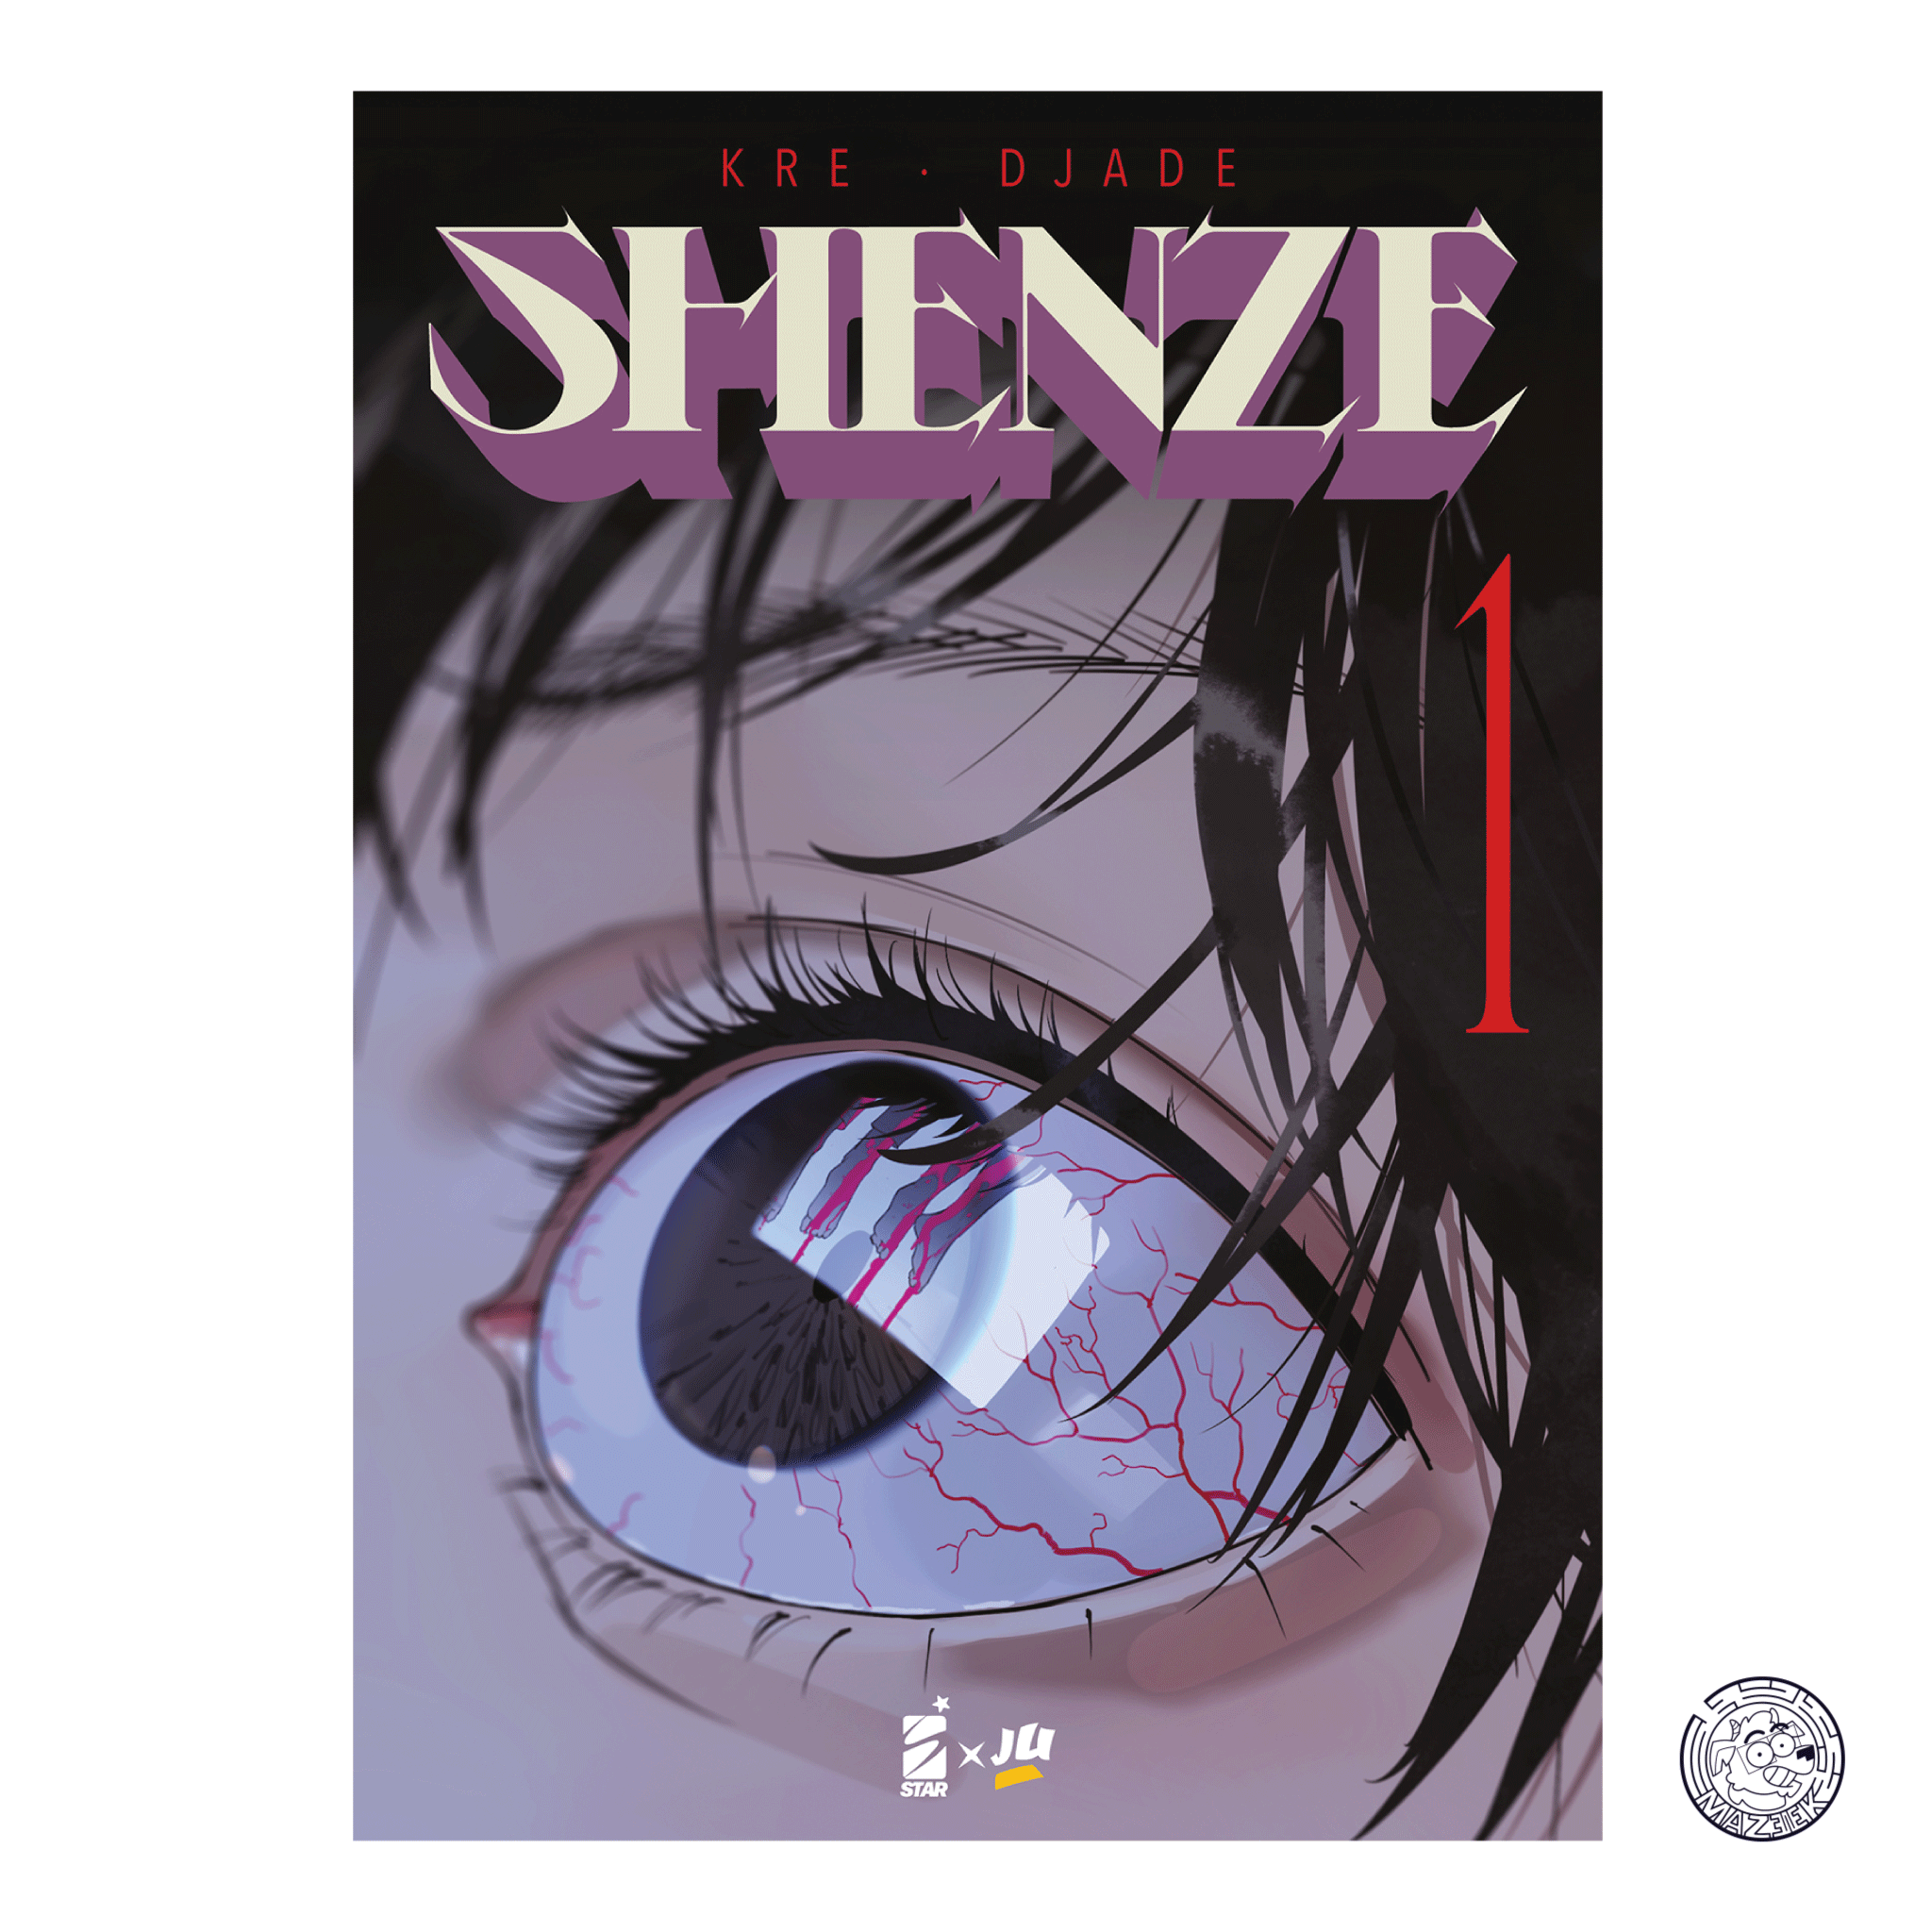 Shenze 01